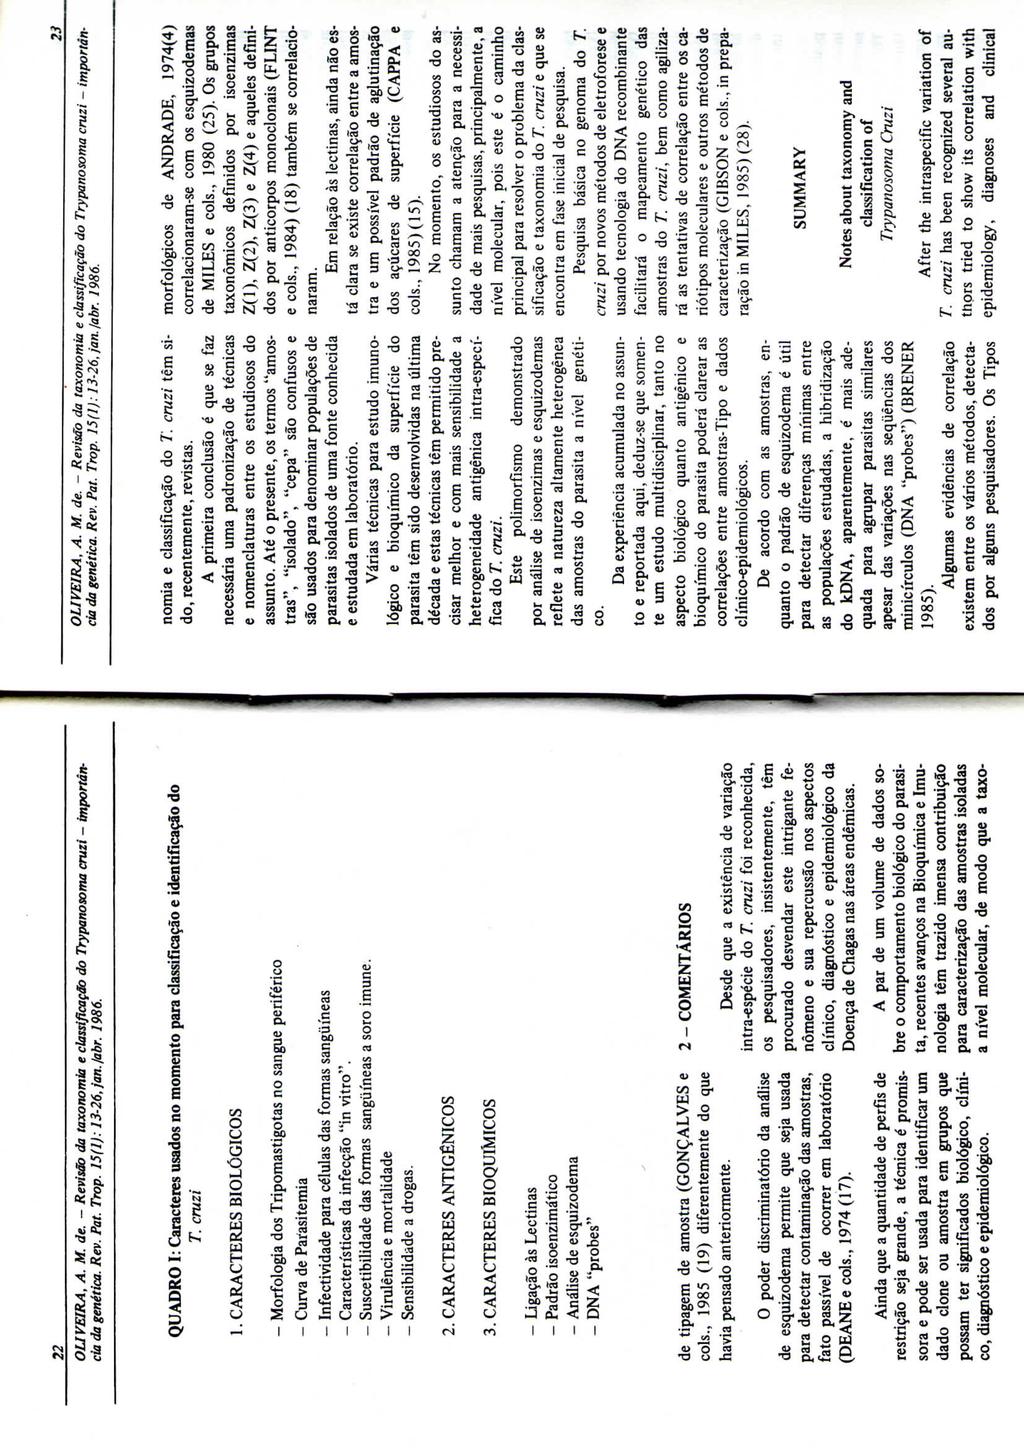 OLIVEIRA, A. M. de. - Revisão da taxonamia e classificação do Trypanosoma cruzi - importância da genética. Rev. Pat. Trop. 15(1): 13-26,jan.labr. 1986. da genética. Rev. Pat. Trop. 15(1): 13-26, jan.